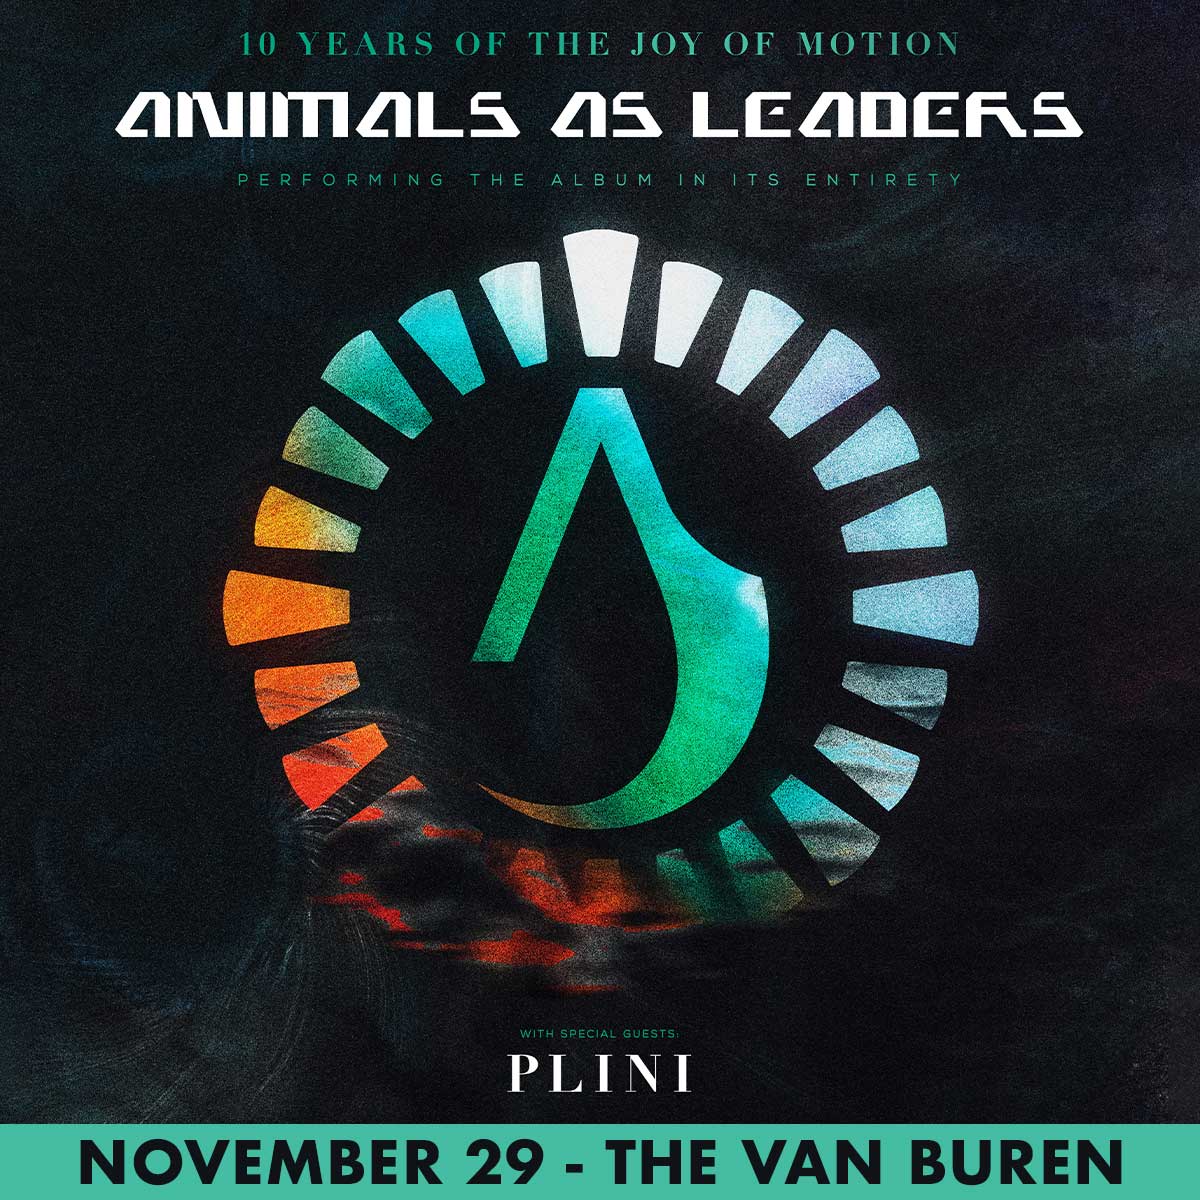 ANIMALS AS LEADERSThe Van Buren